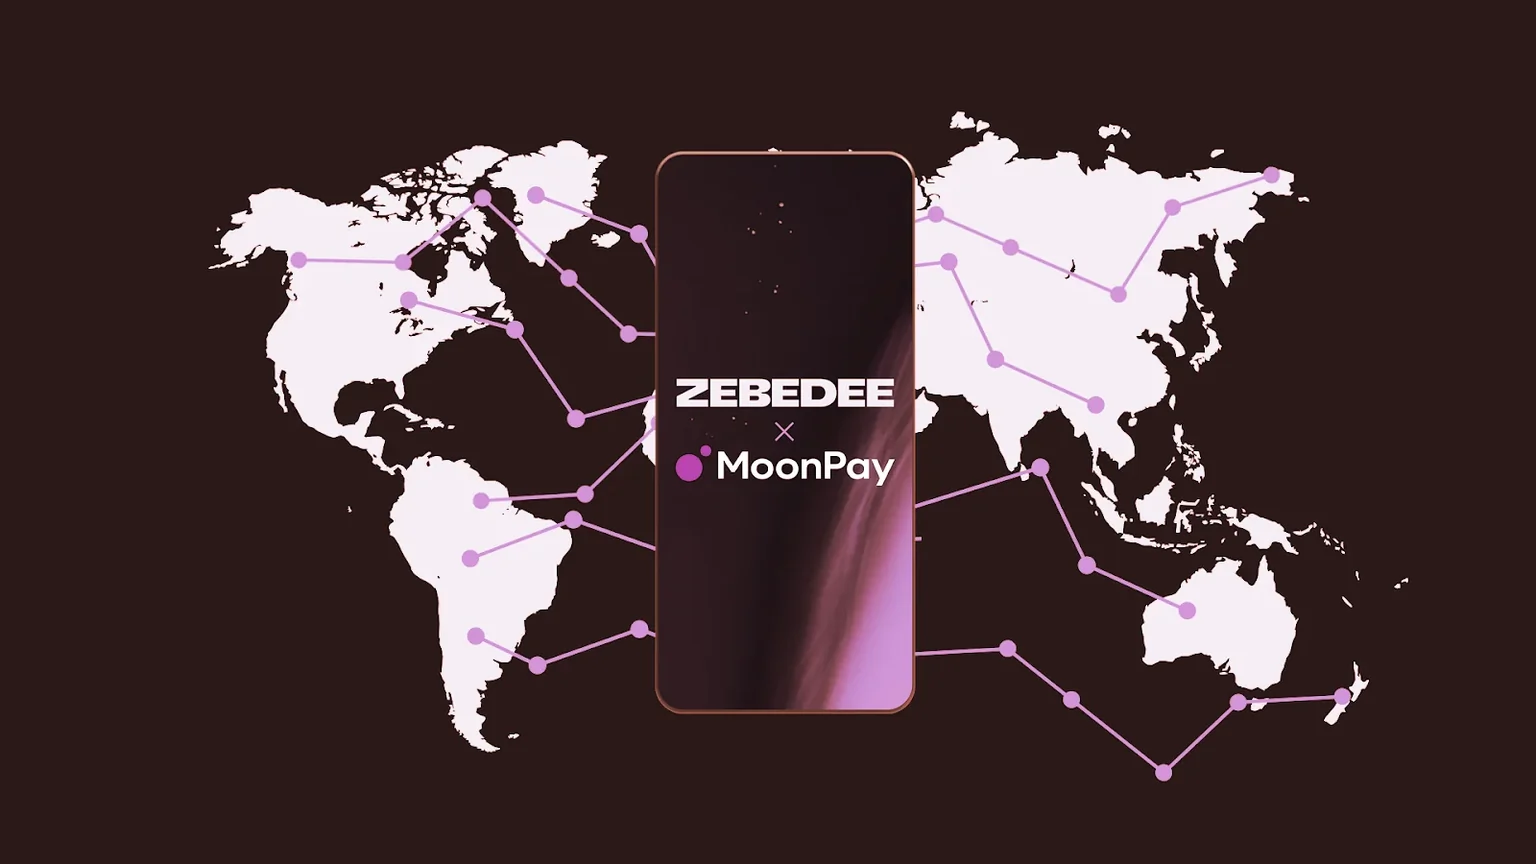 Bitcoin gaming app ZEBEDEE has integrated MoonPay services. Image: ZEBEDEE